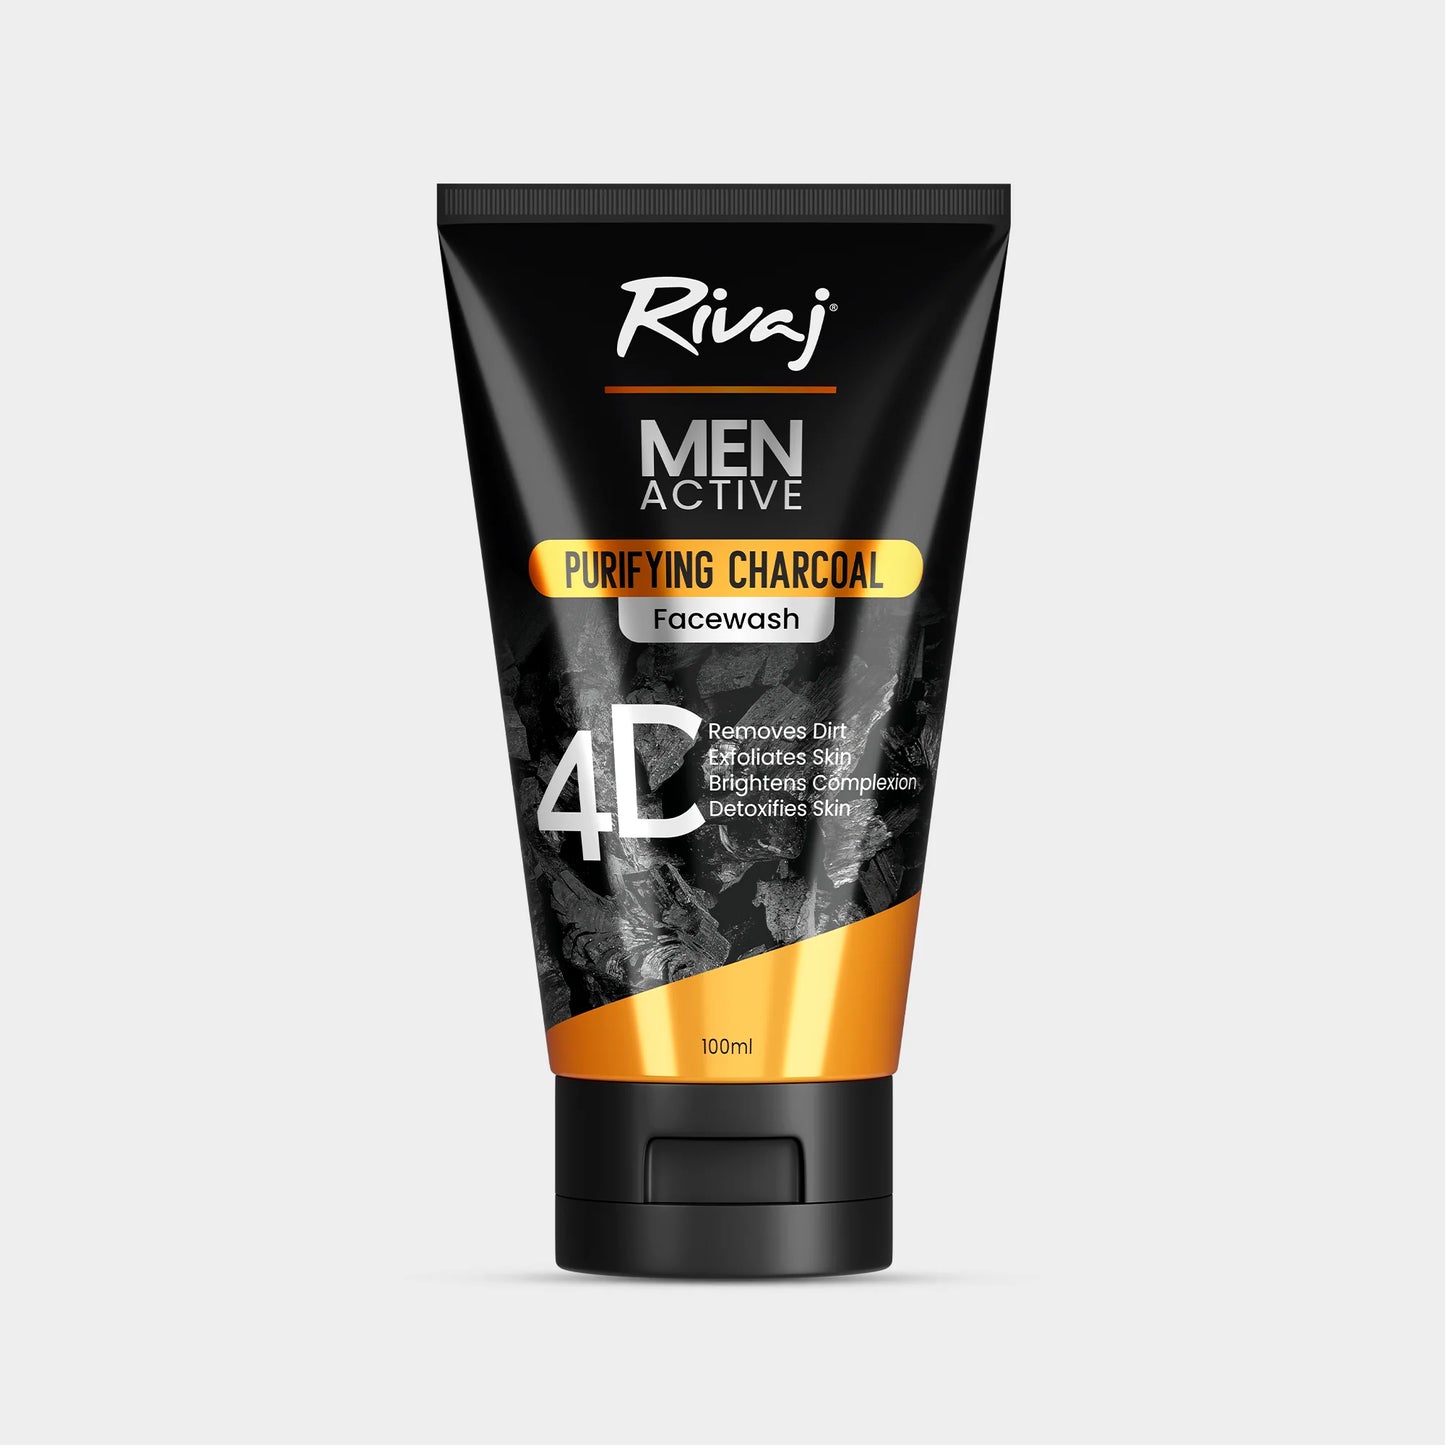 Rivaj Men Active Purifying Charcoal Face Wash